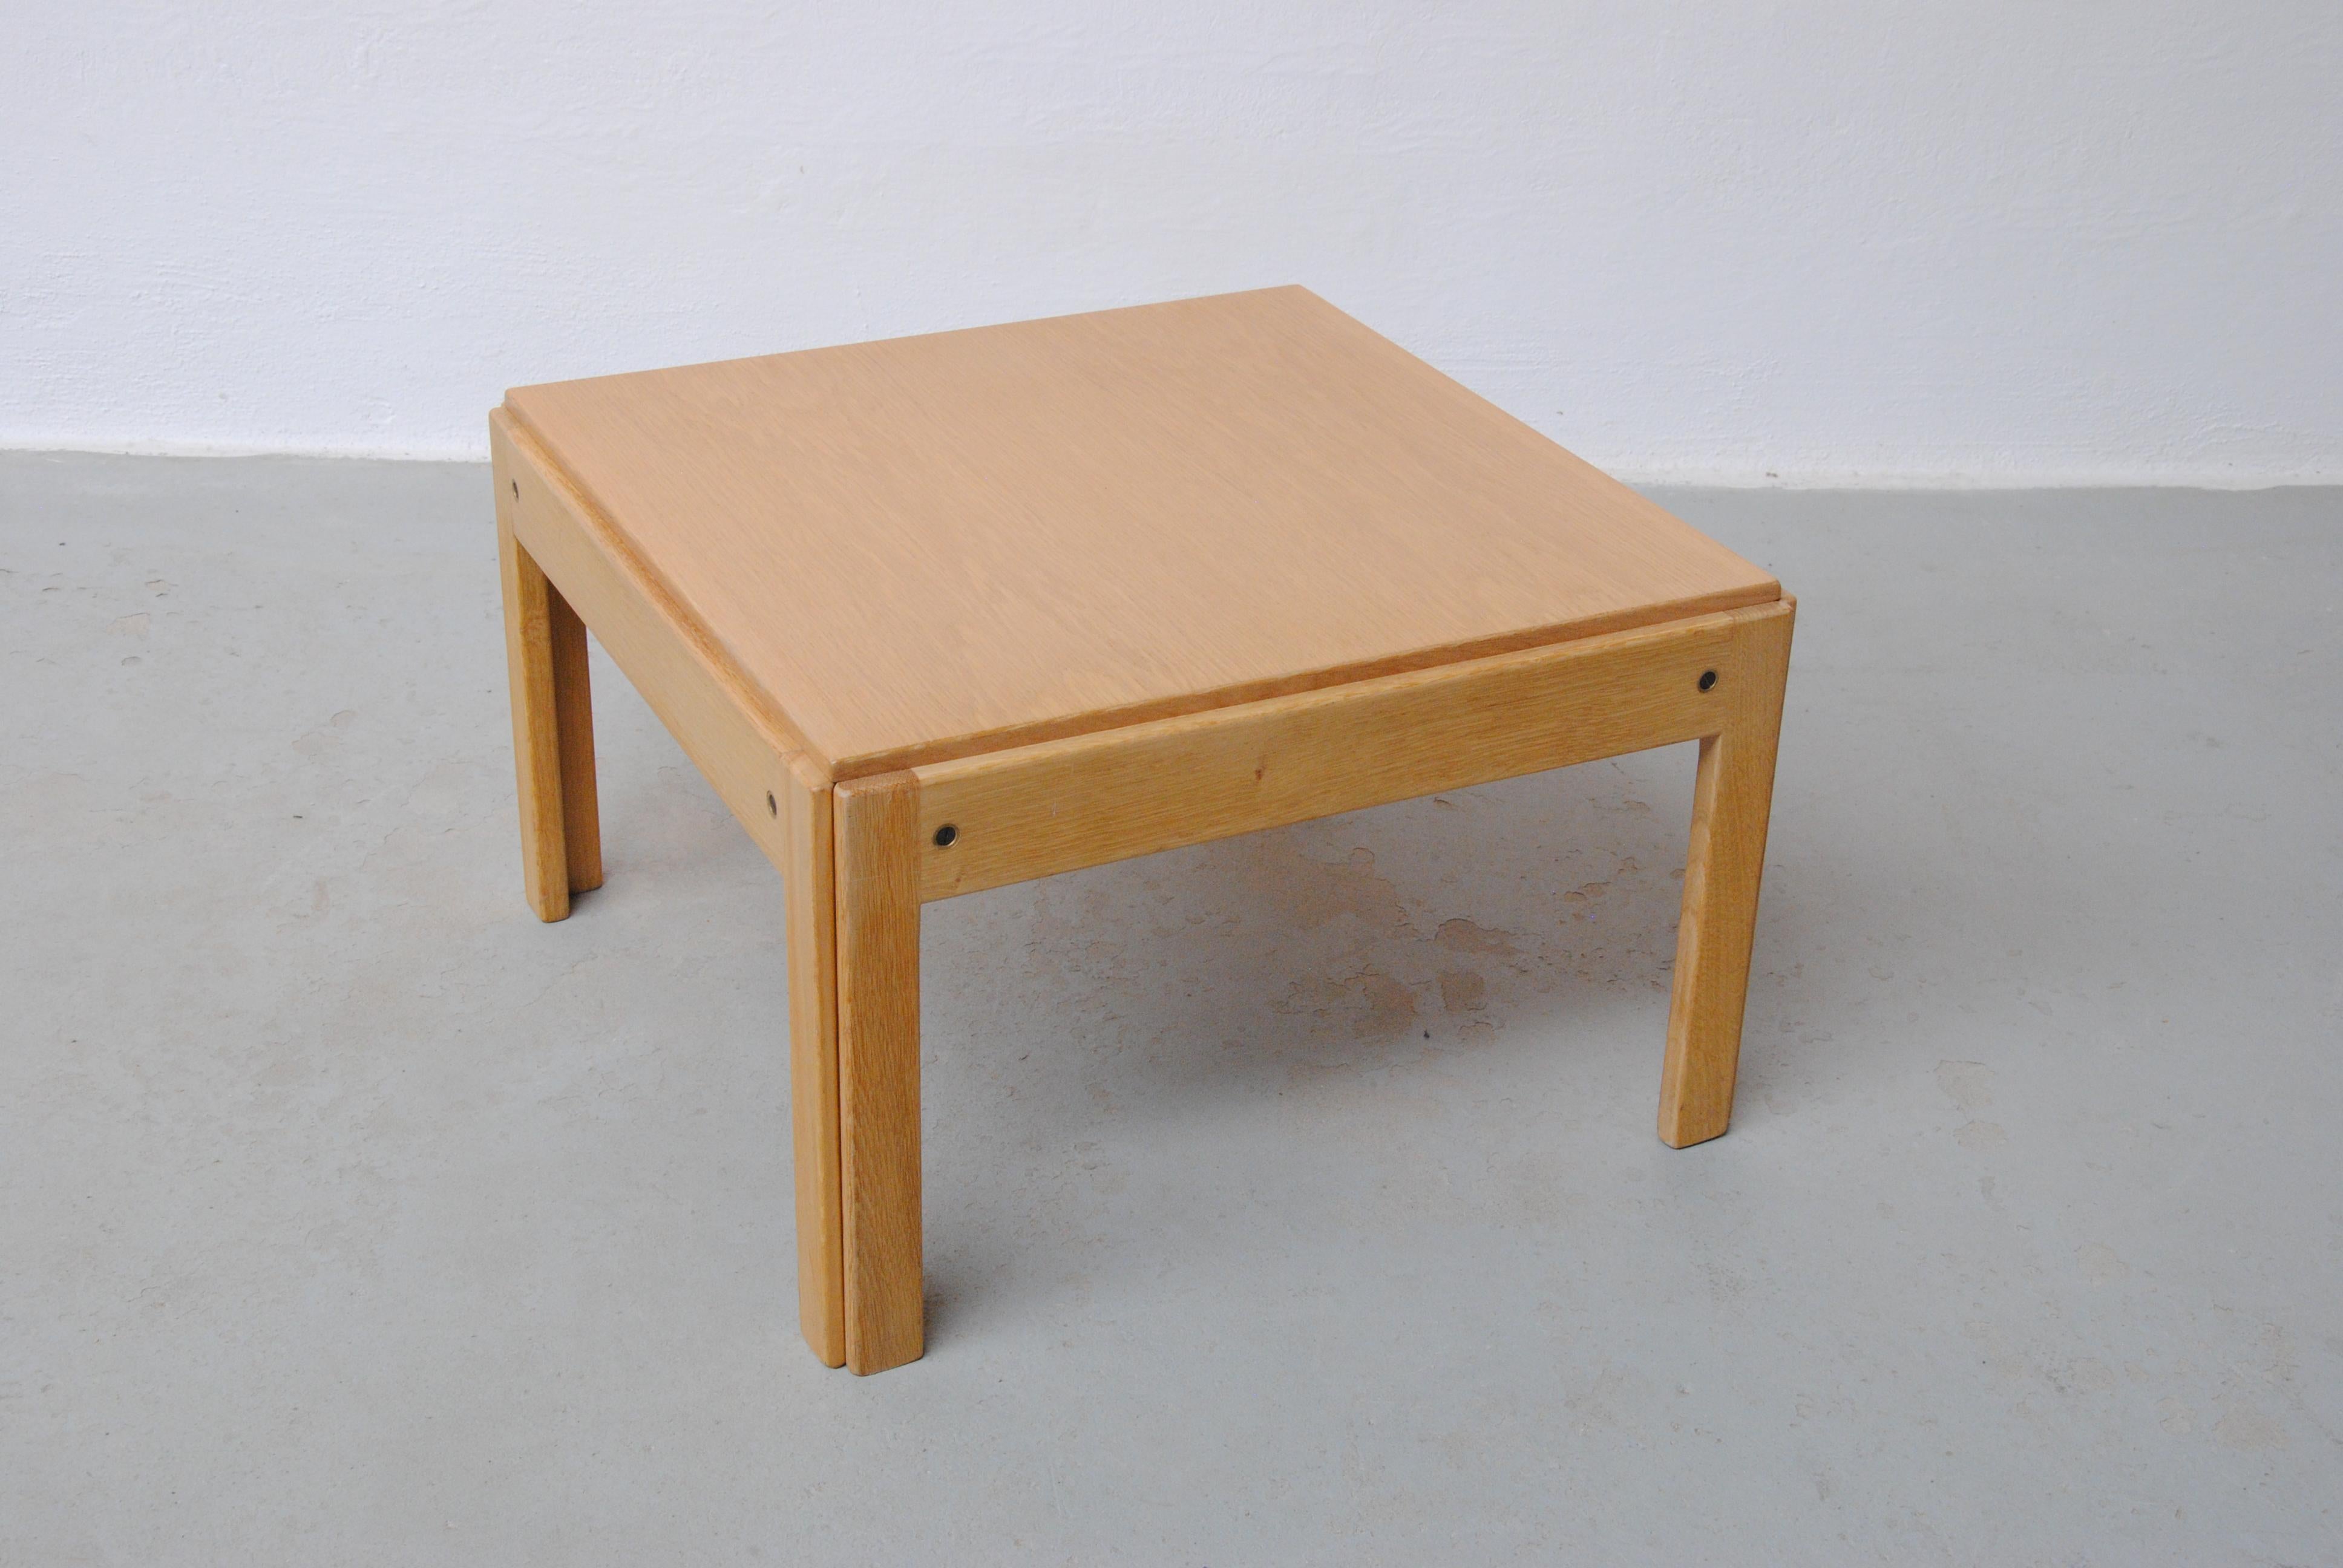 Table d'appoint restaurée Illum Wikkelsø en chêne de la série Plexus produite par CFC Silkeborg au Danemark.

La table d'appoint bien conçue peut être utilisée comme table d'appoint et, avec un coussin dessus, comme tabouret de pied. La table